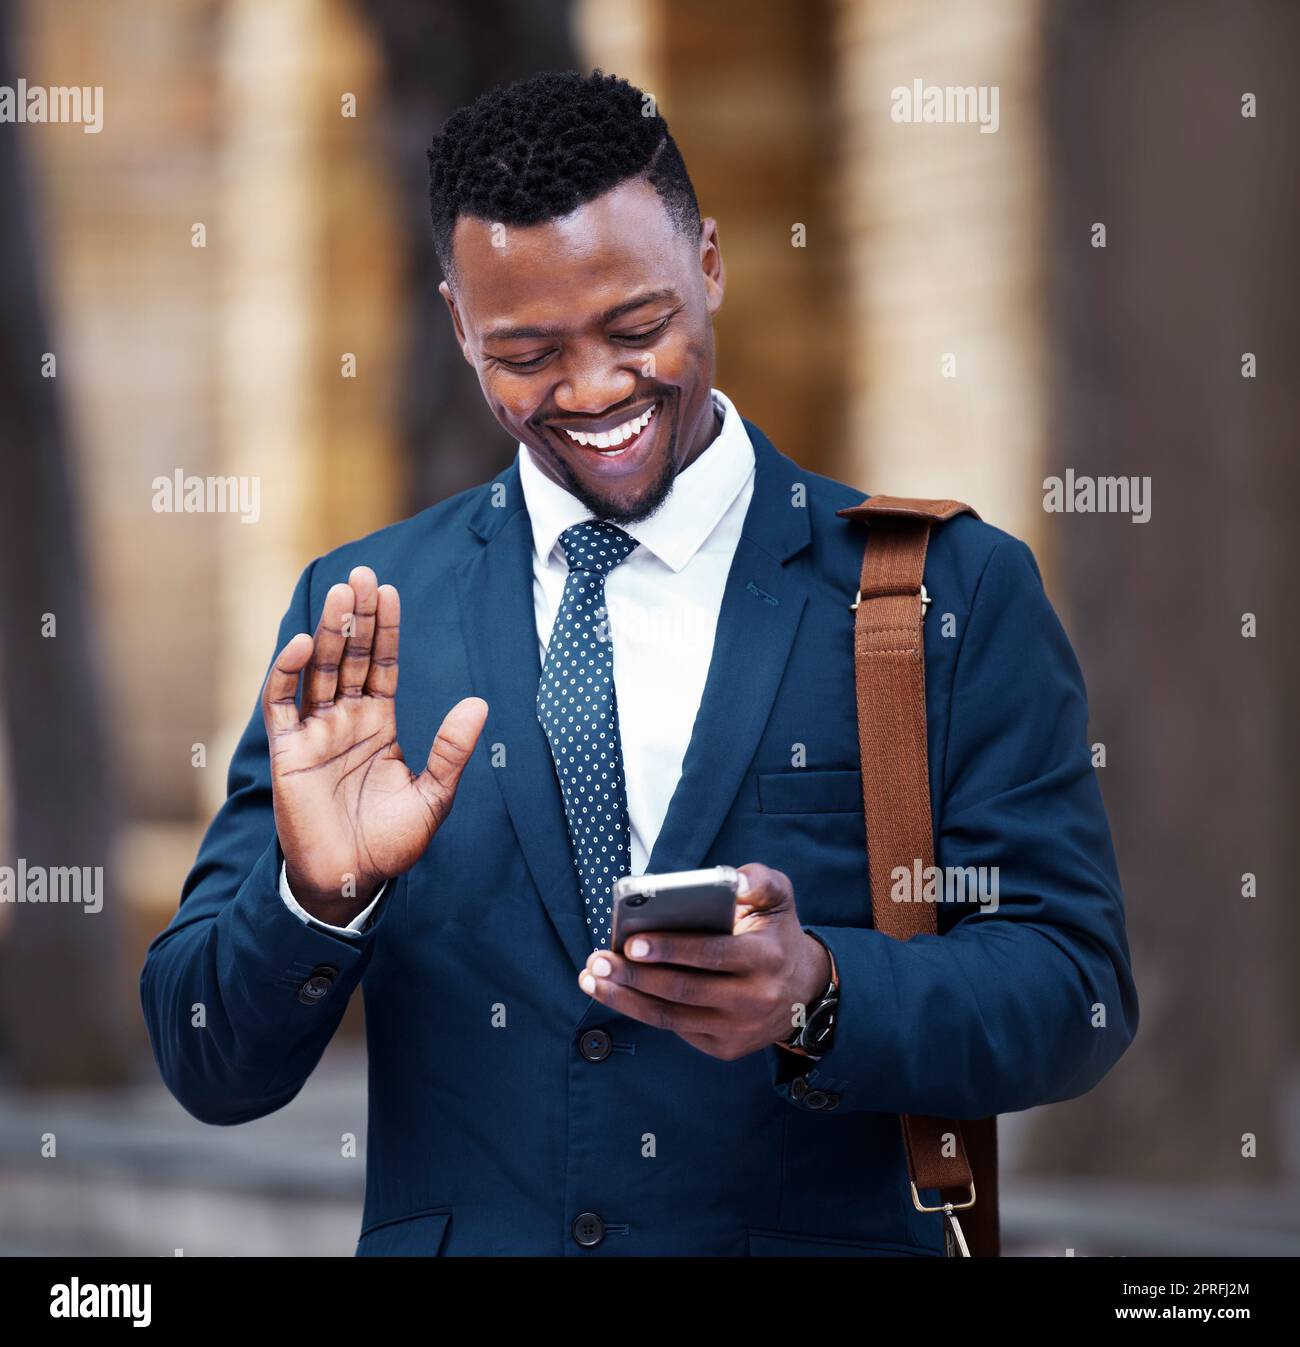 Appel vidéo de jeunes hommes d'affaires africains sur smartphone, en dehors du bâtiment de bureau de l'entreprise et la communication dans la ville. Portrait d'entrepreneur sur les médias sociaux, 5g connexion Internet avec la technologie mobile. Banque D'Images